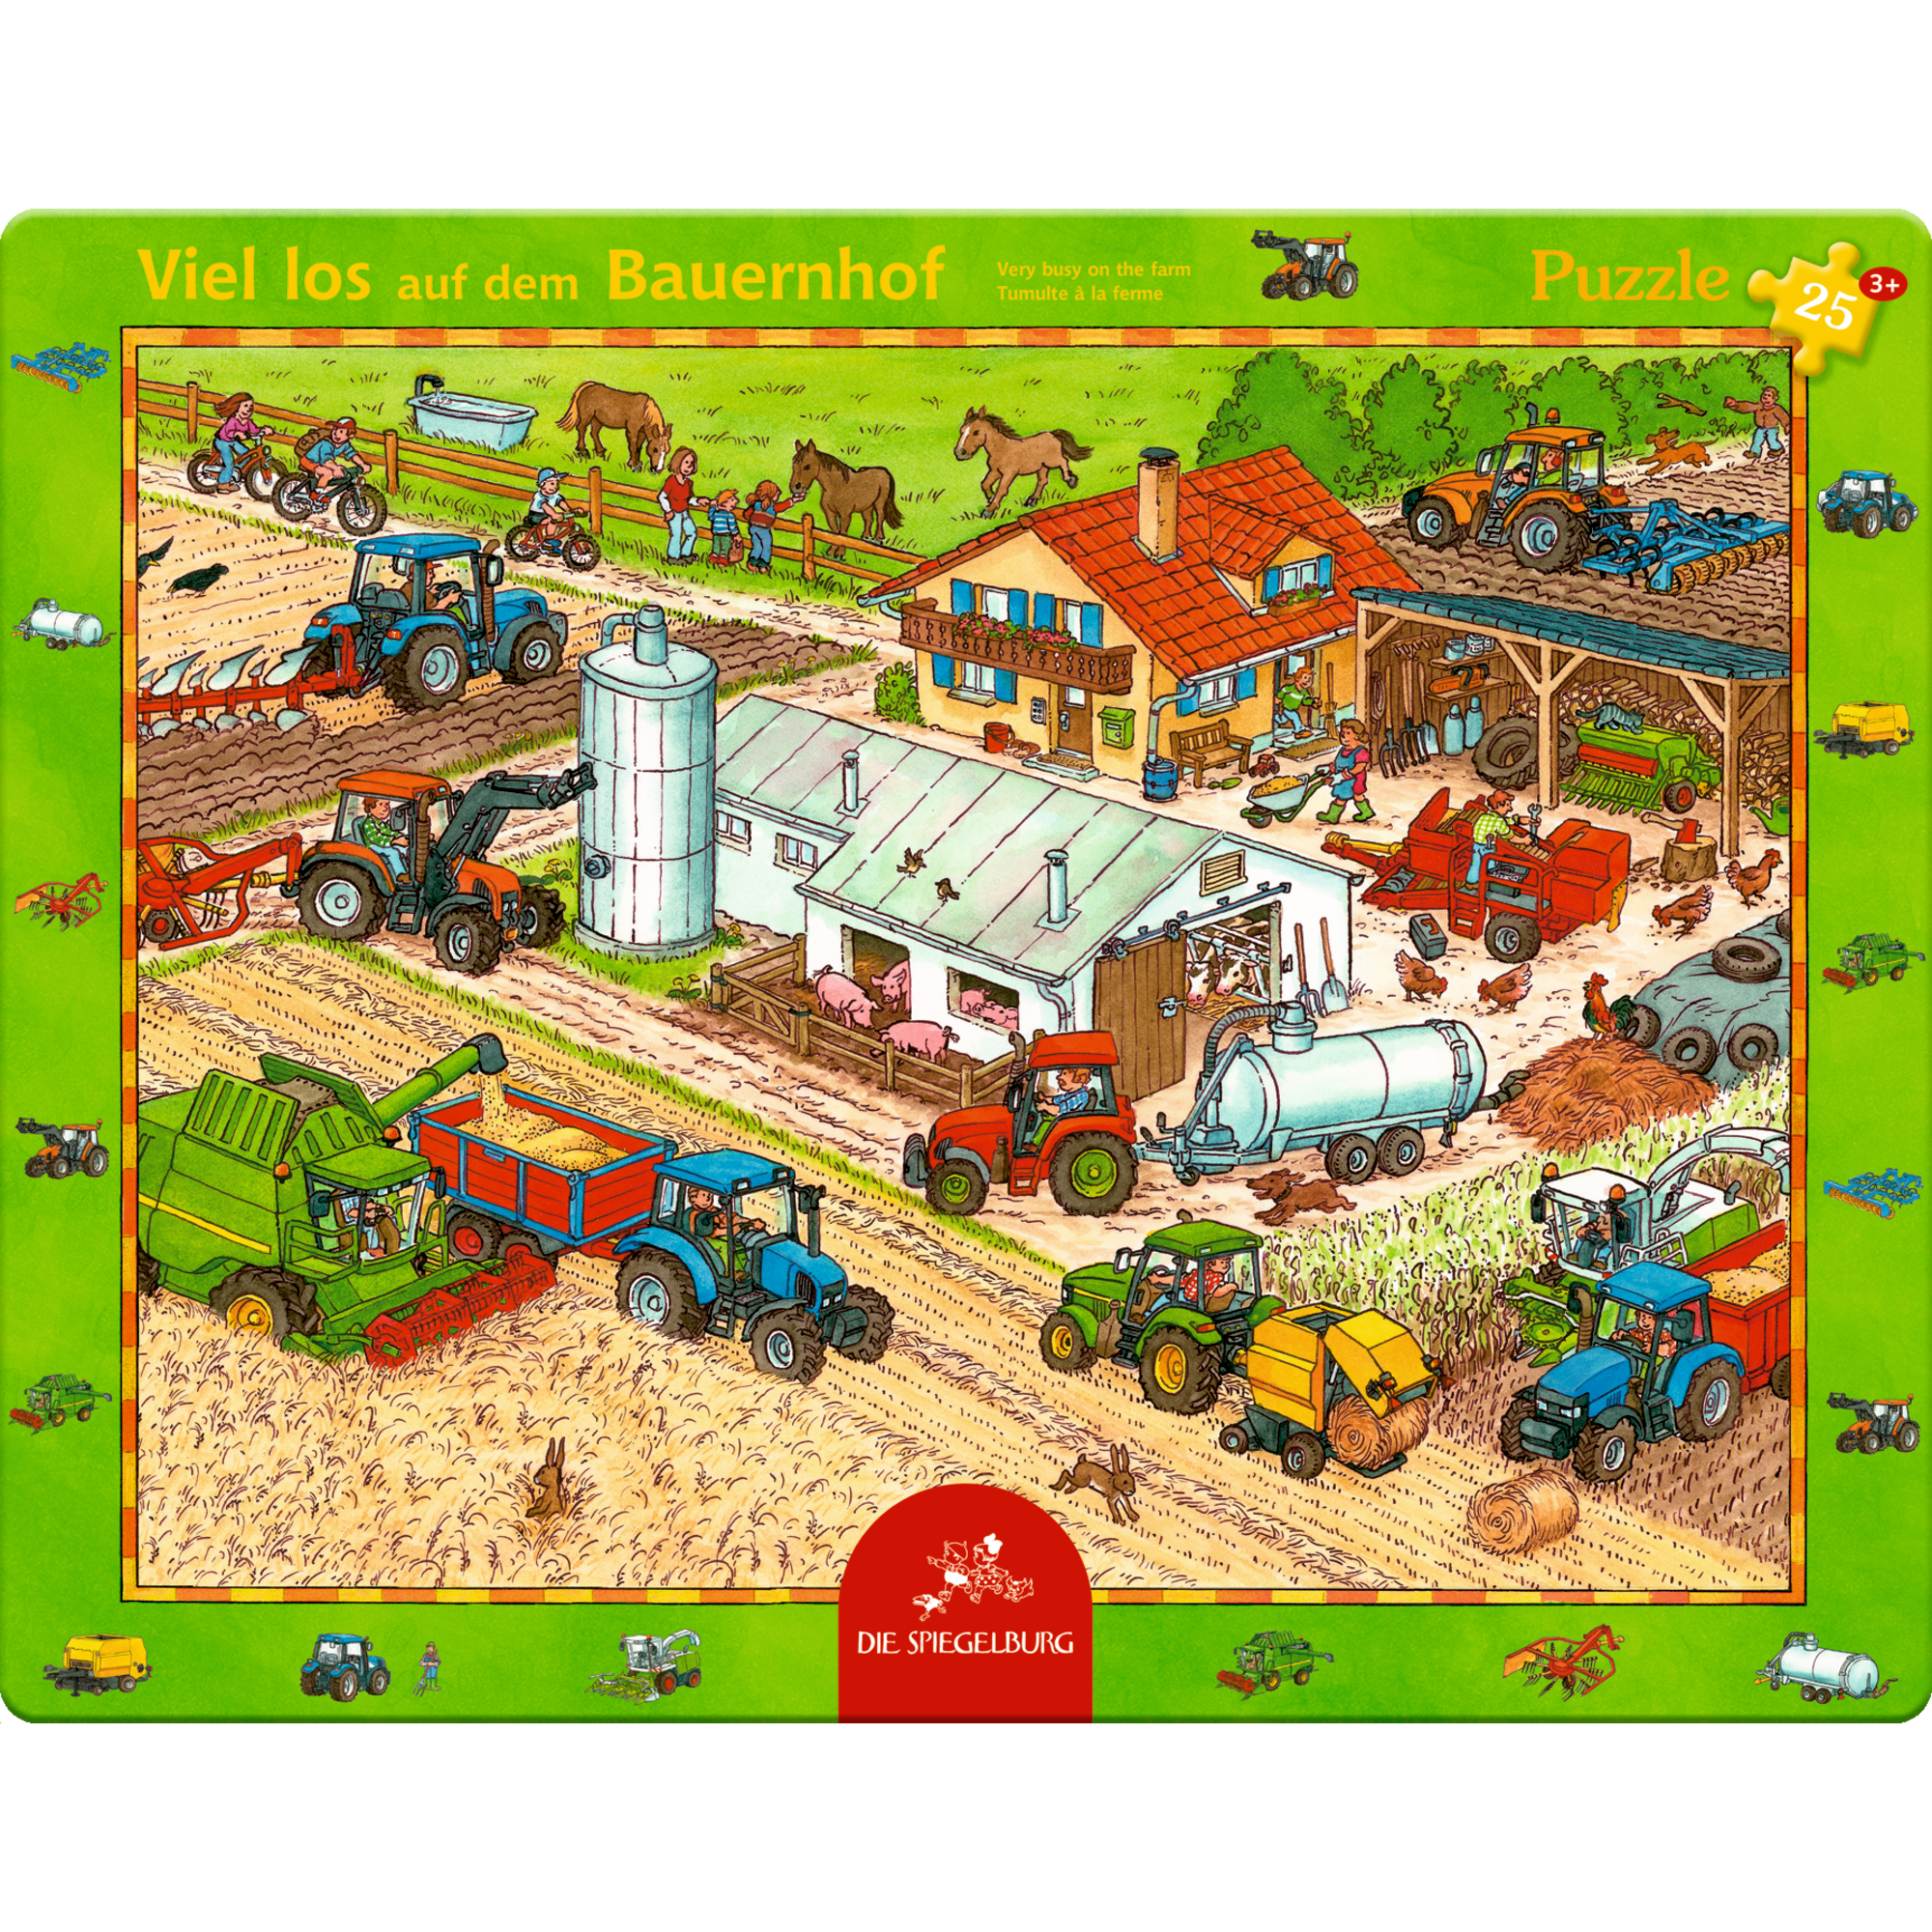 Rahmenpuzzle - Viel los auf dem Bauernhof DIE SPIEGELBURG 2000585174200 1